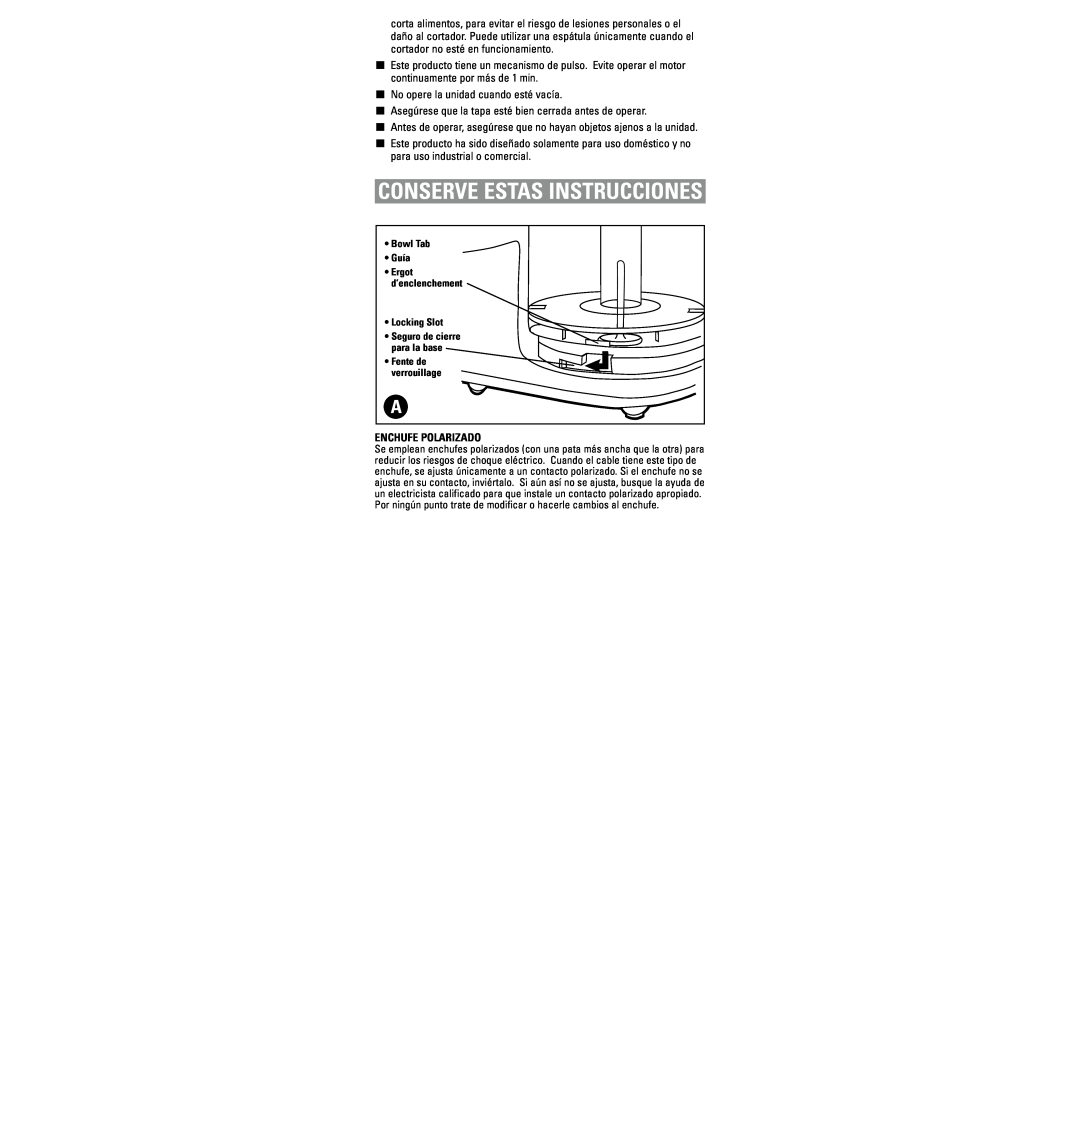 Black & Decker HC3000 warranty Conserve Estas Instrucciones, Enchufe Polarizado 